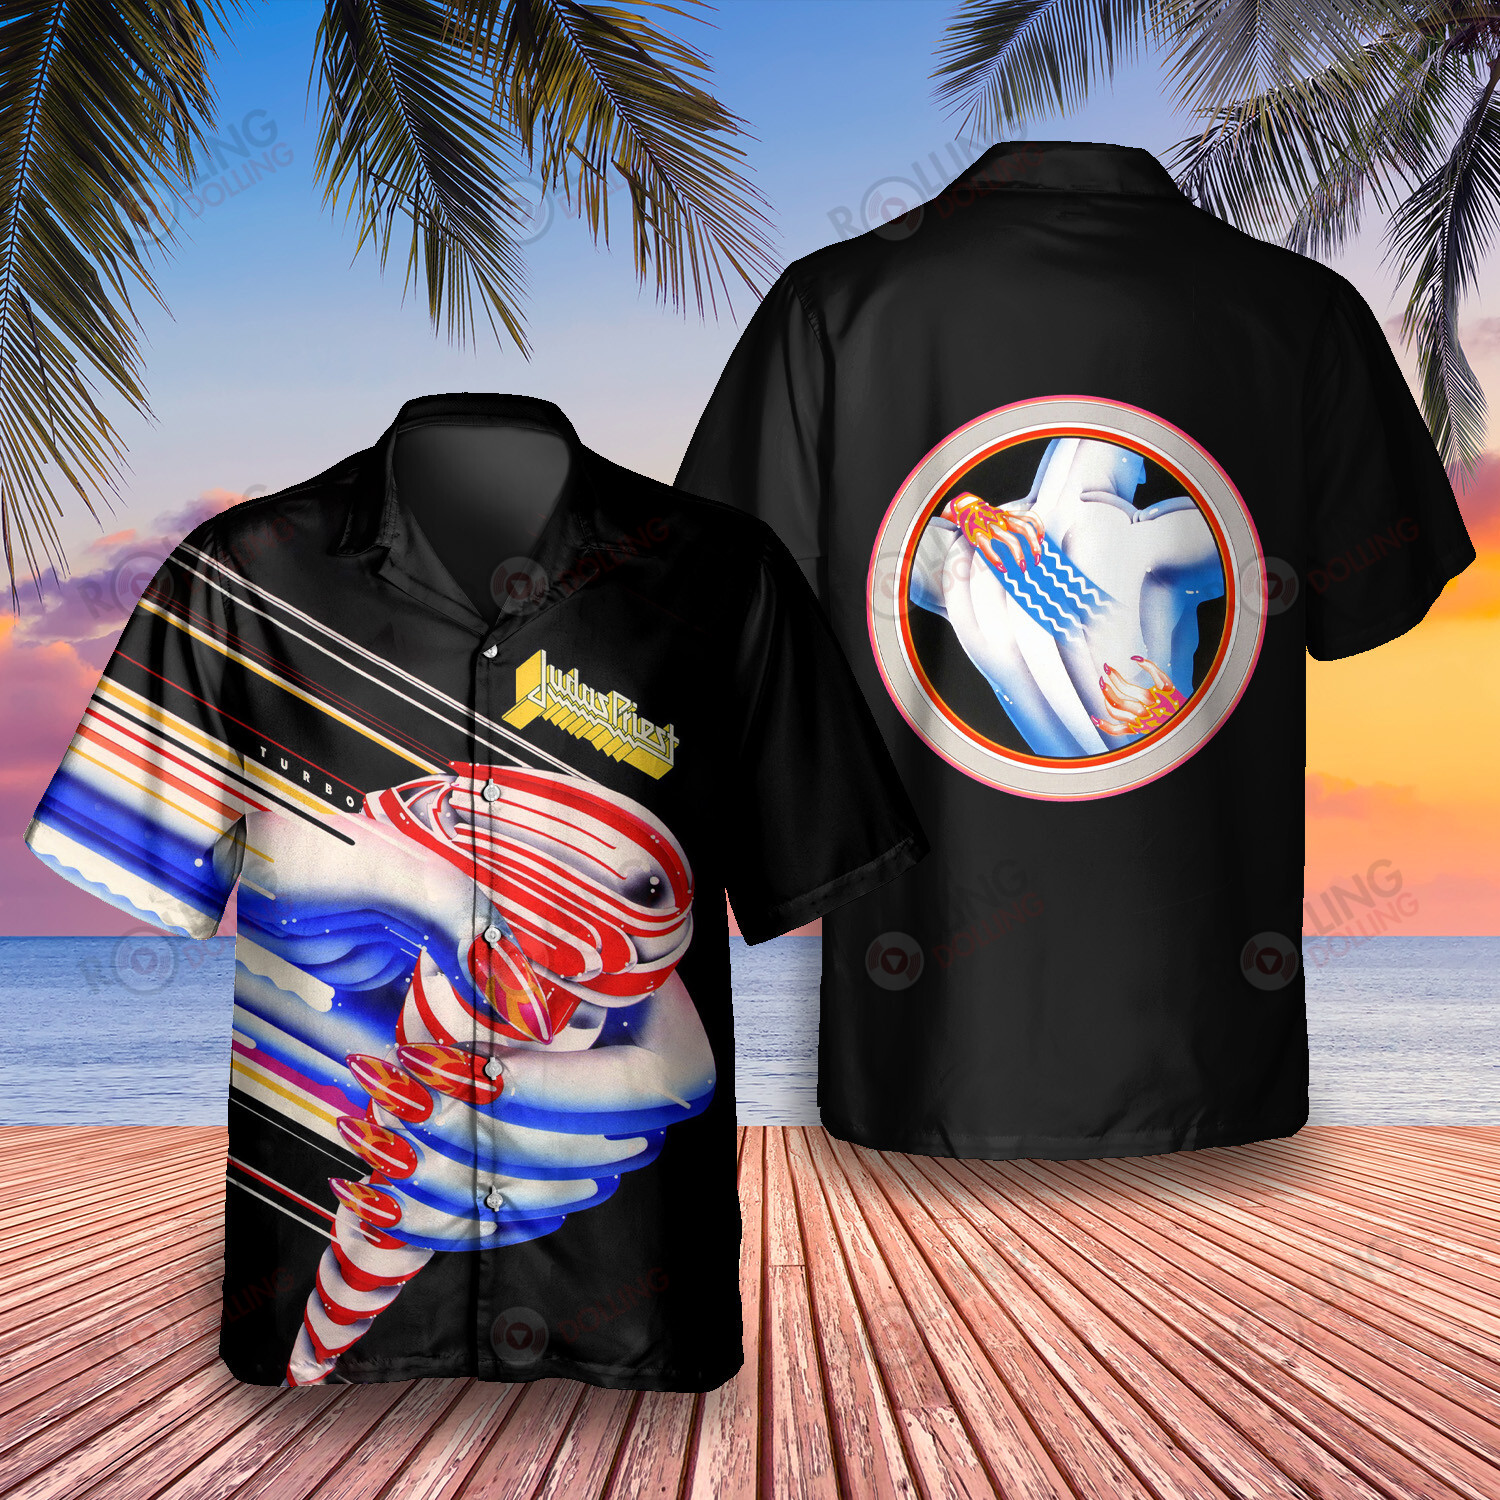 HOT Judas Priest Turbo Album Tropical Shirt1